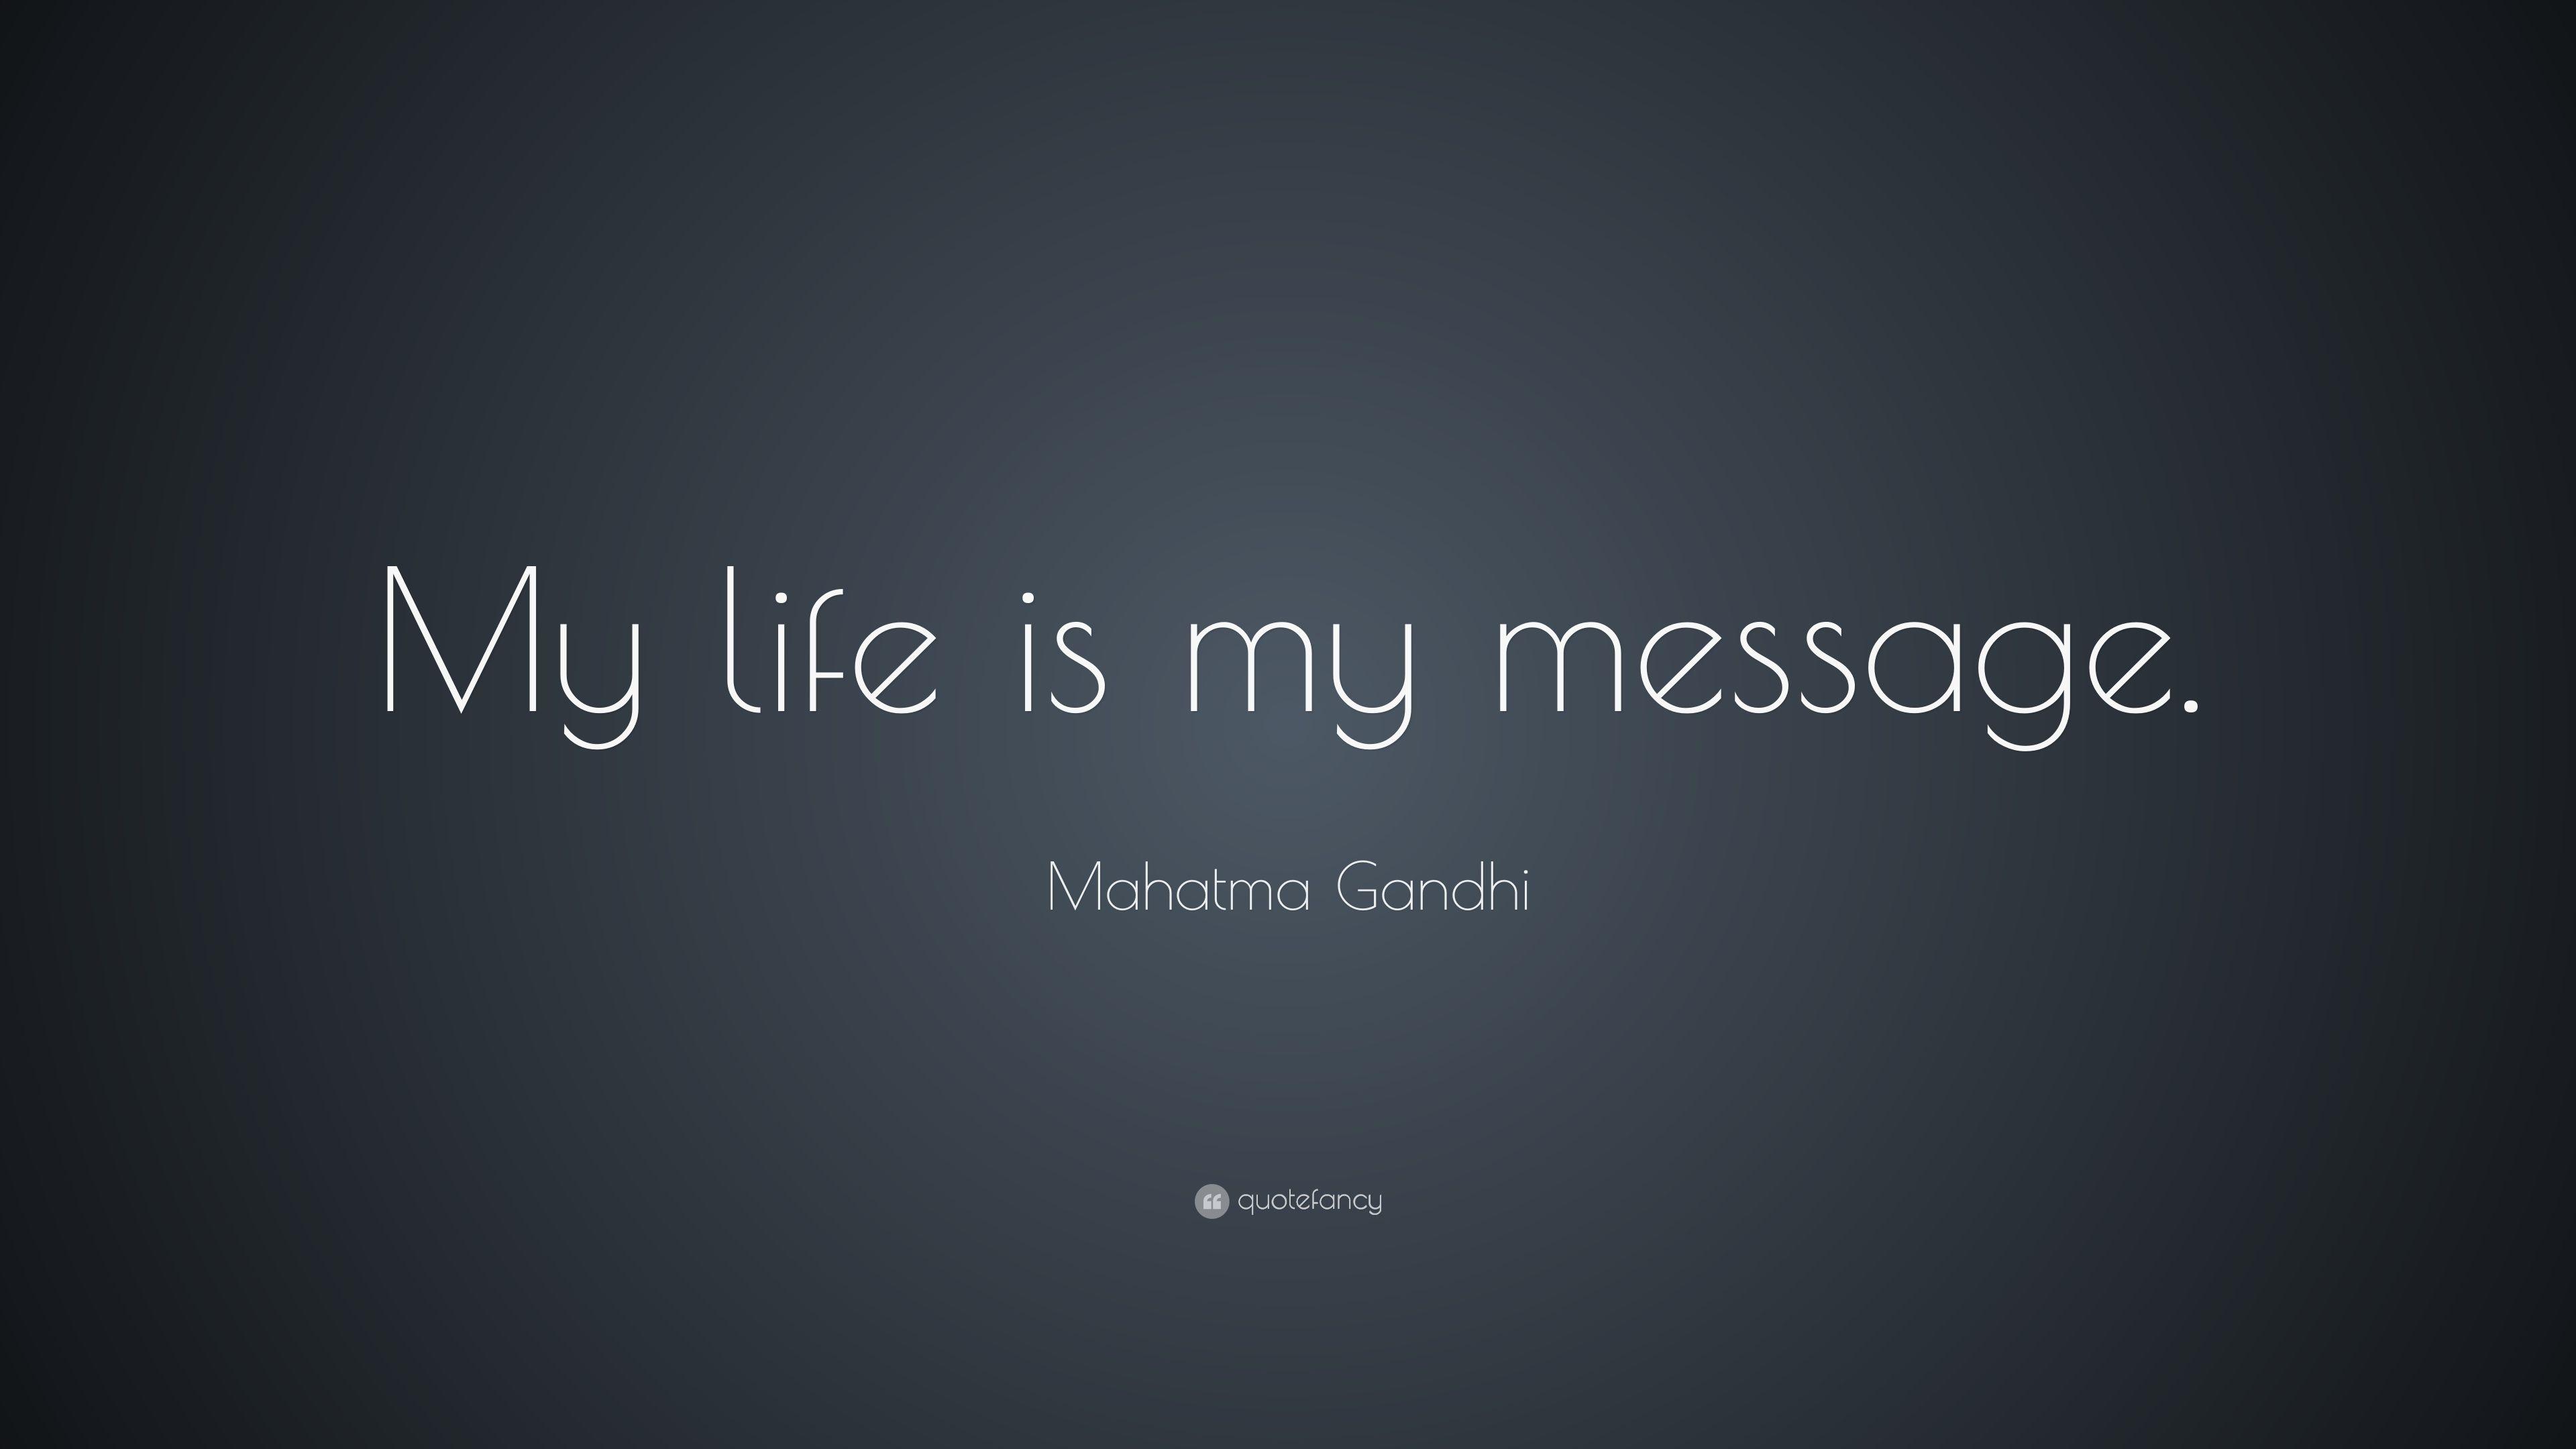 Mahatma Gandhi Quote: “My life is my message.” 10 wallpaper